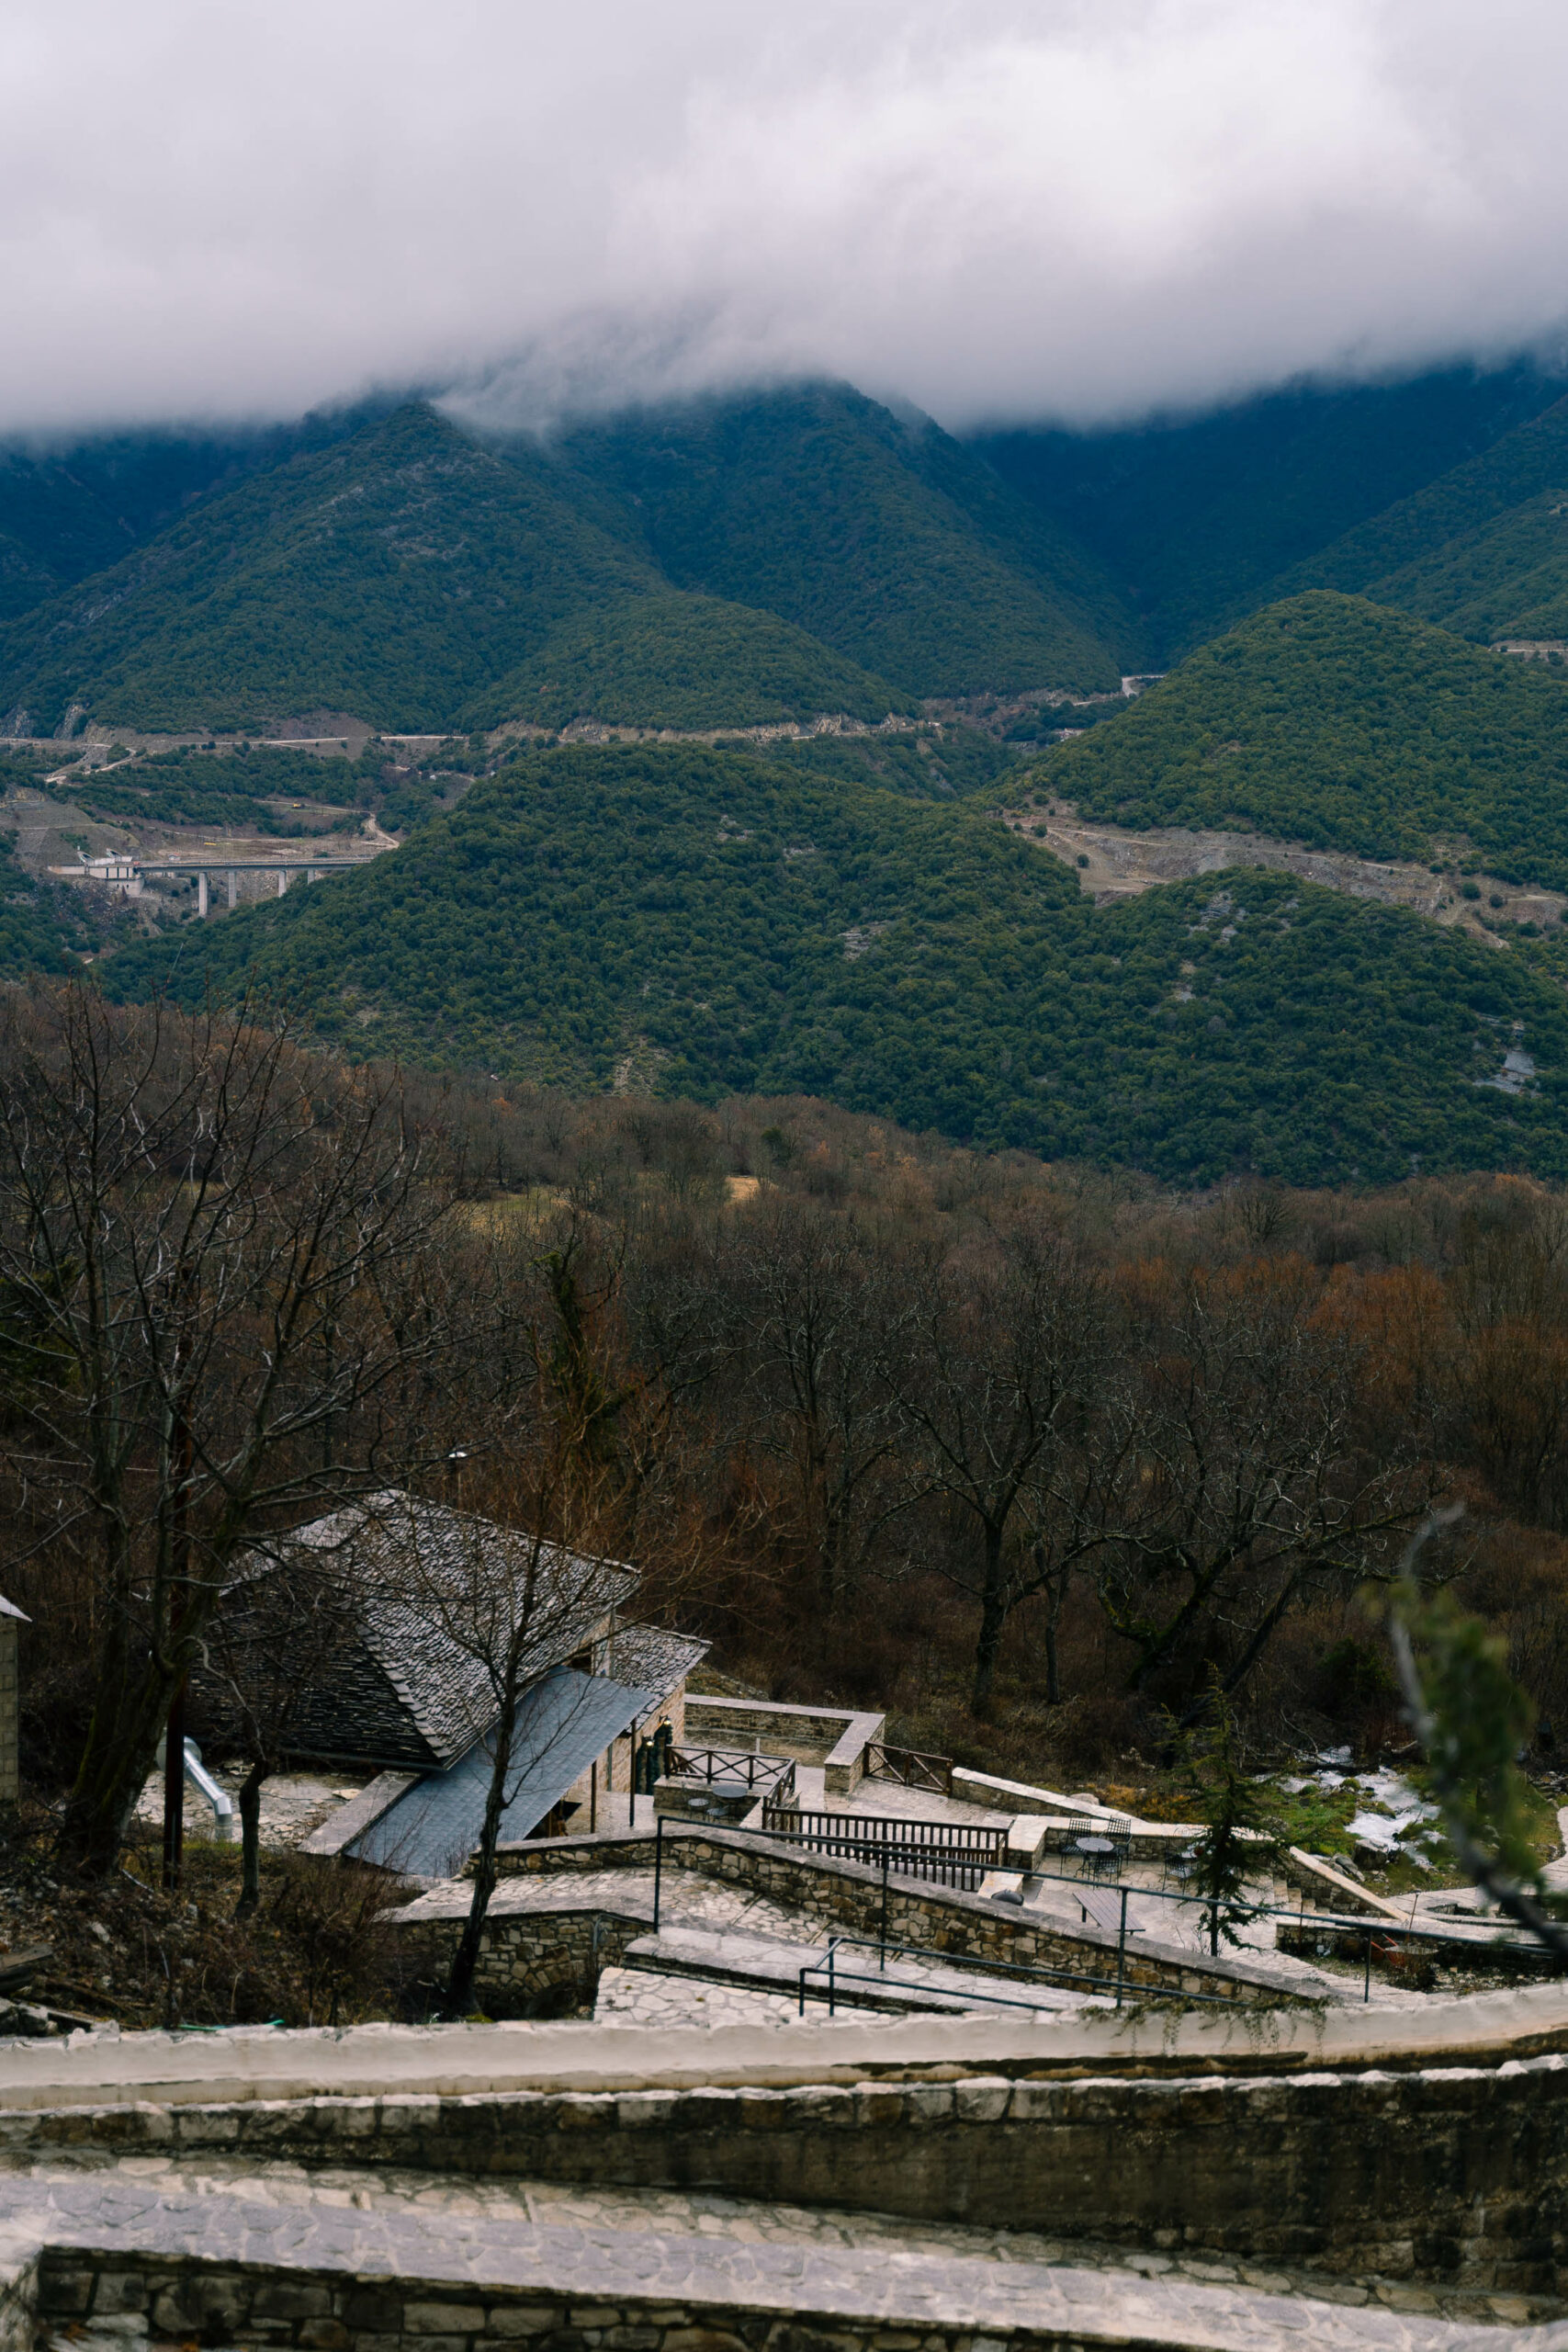 Μέτσοβο: Ένας ορεινός παράδεισος για μια αξέχαστη αυτοκινητόδρομη εκδρομή"
